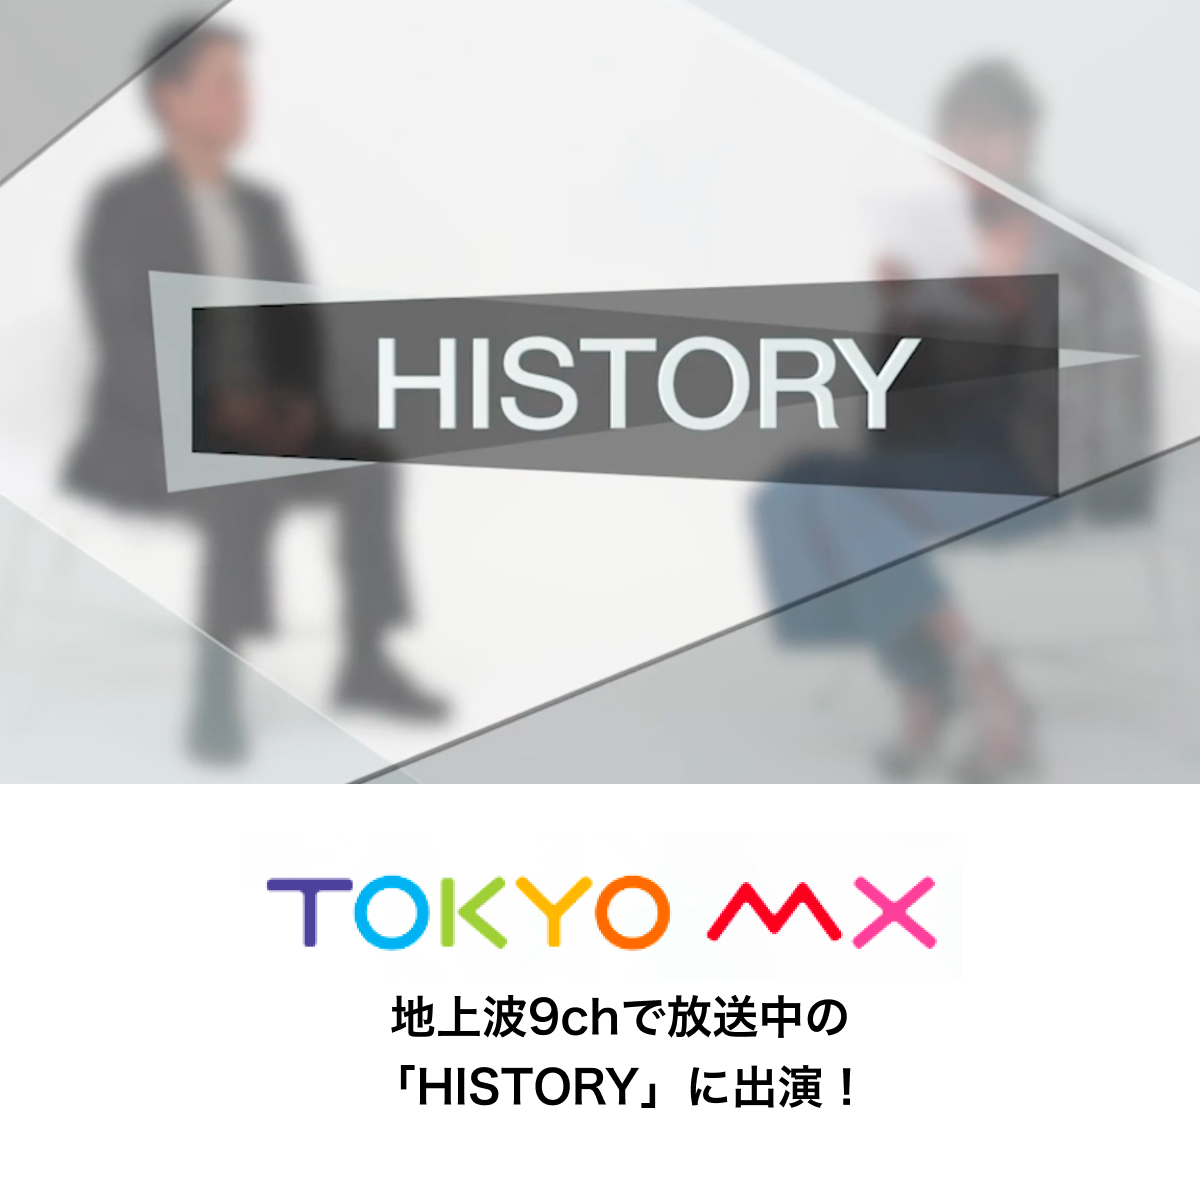 貴島明日香さんMCの「HISTORY」（TOKYO MXテレビ）に出演した際の番組映像